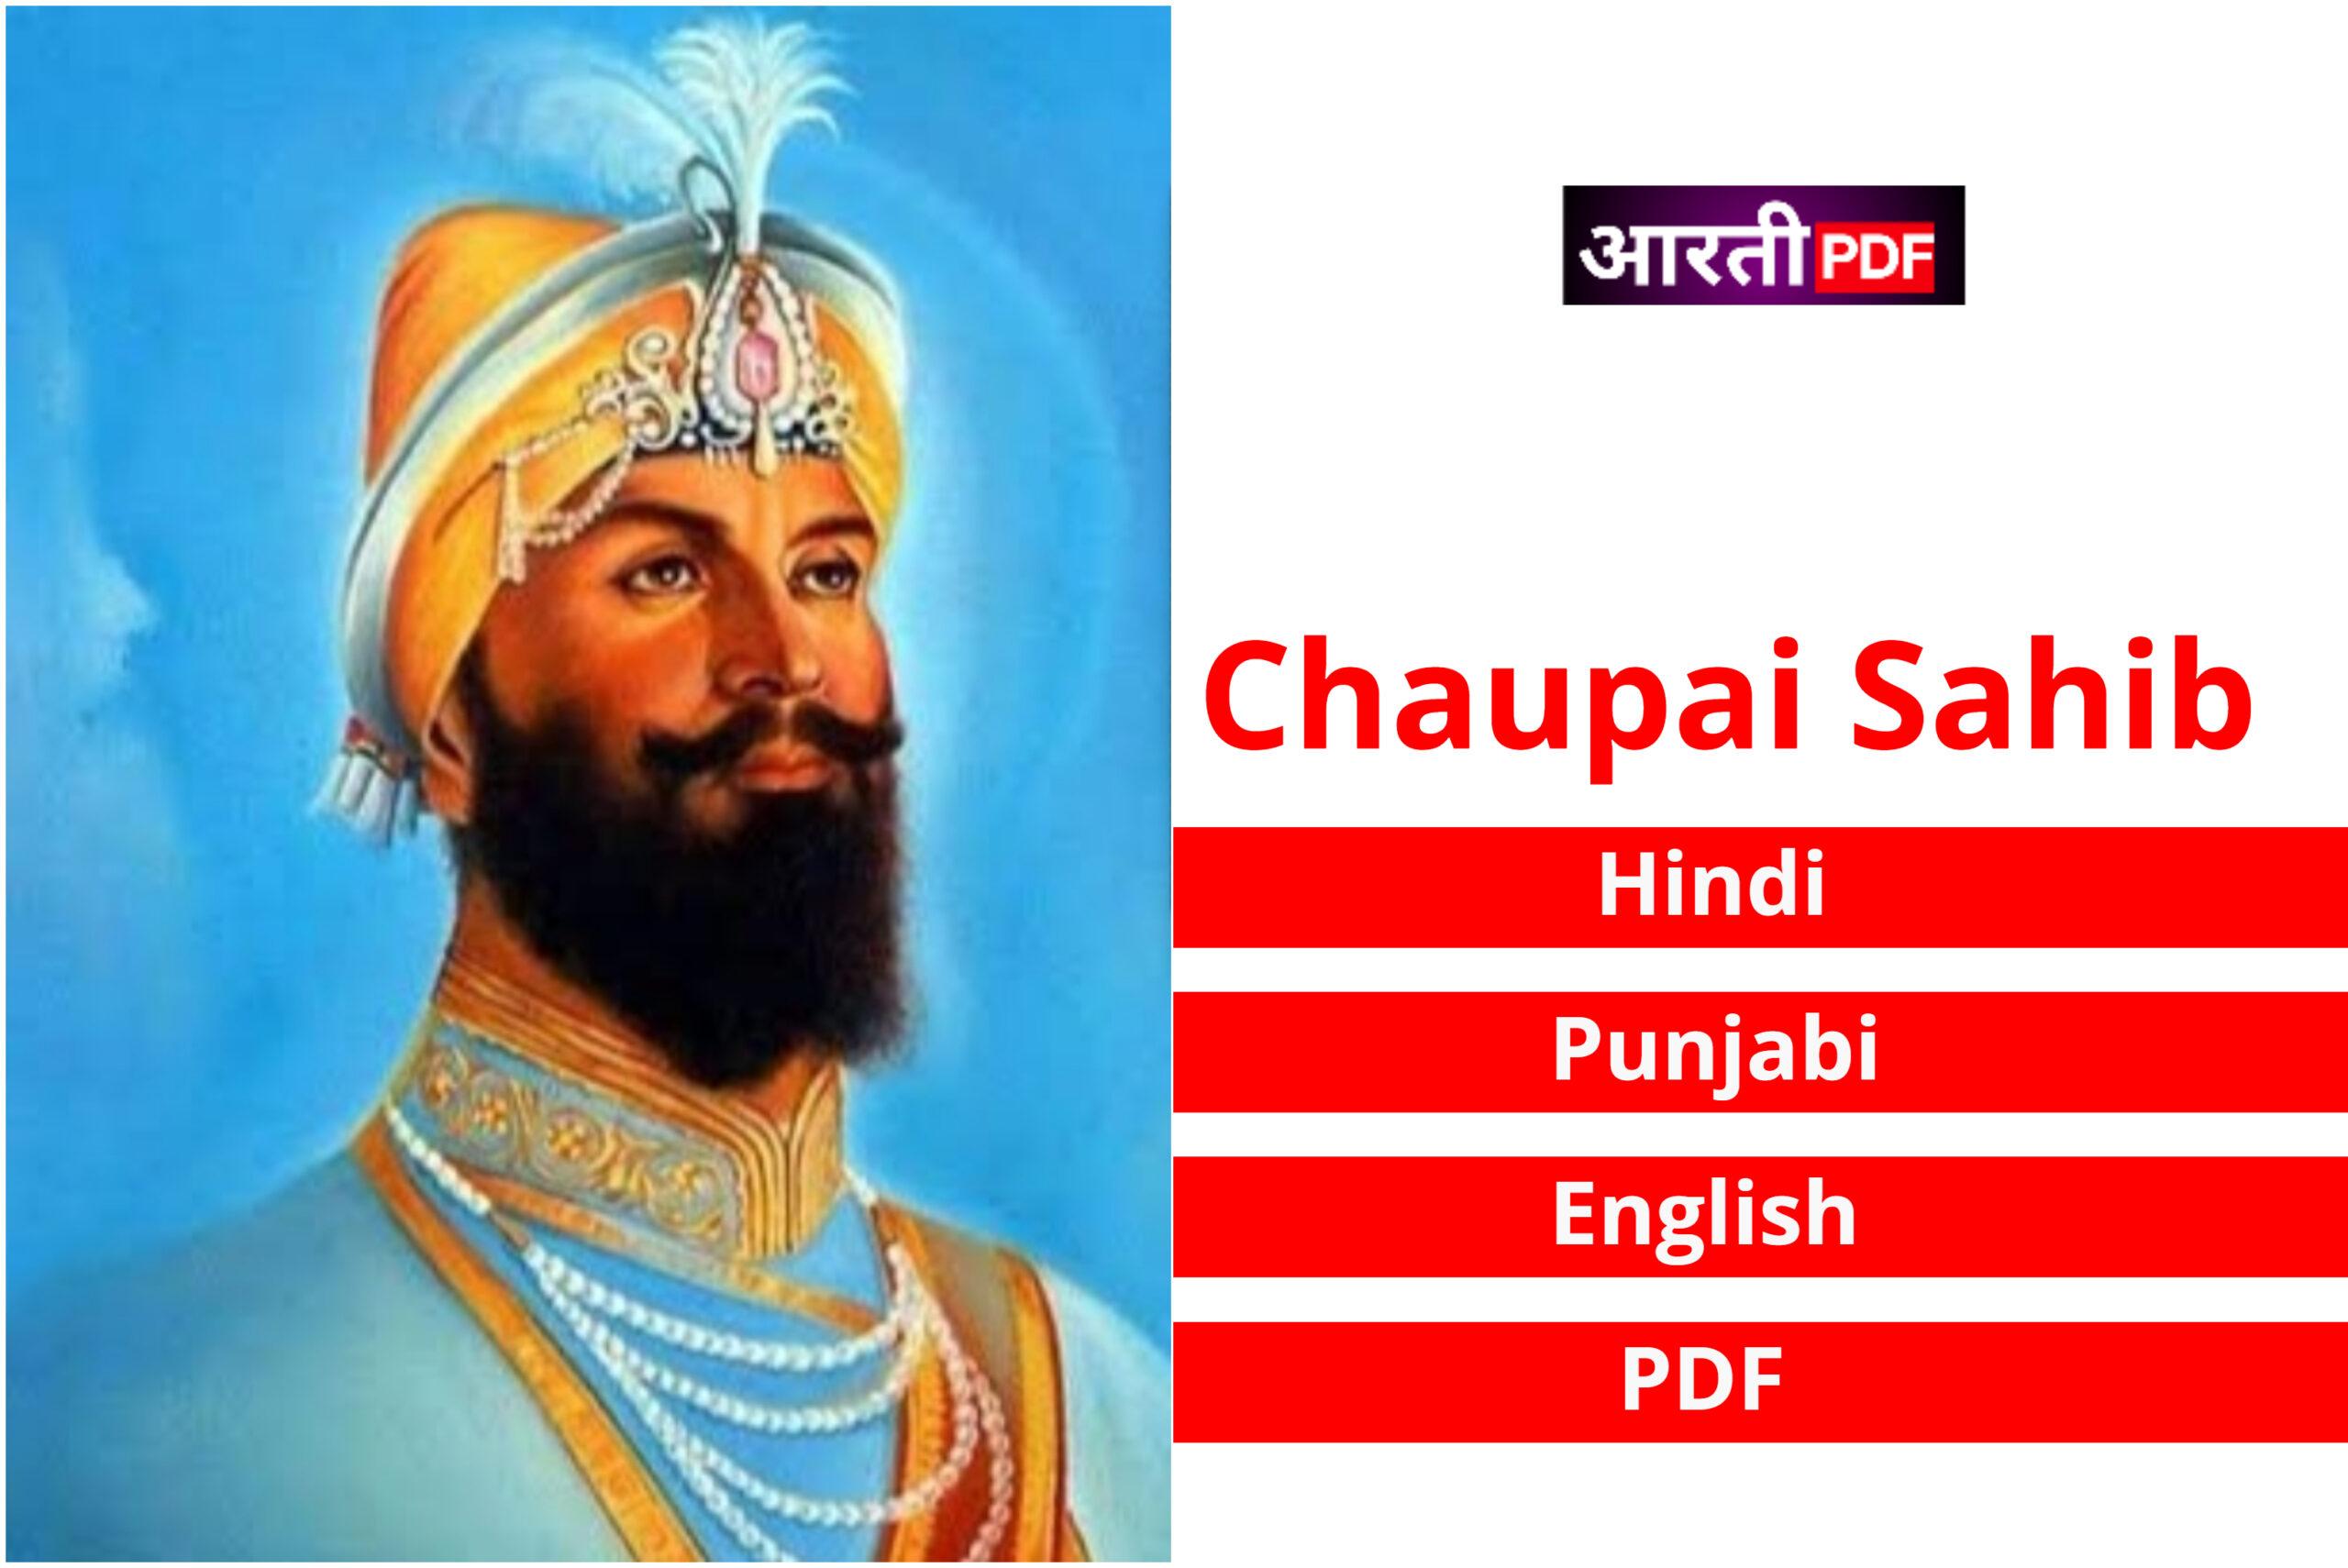 Chaupai Sahib | Chaupai Sahib in Hindi, Punjabi, English